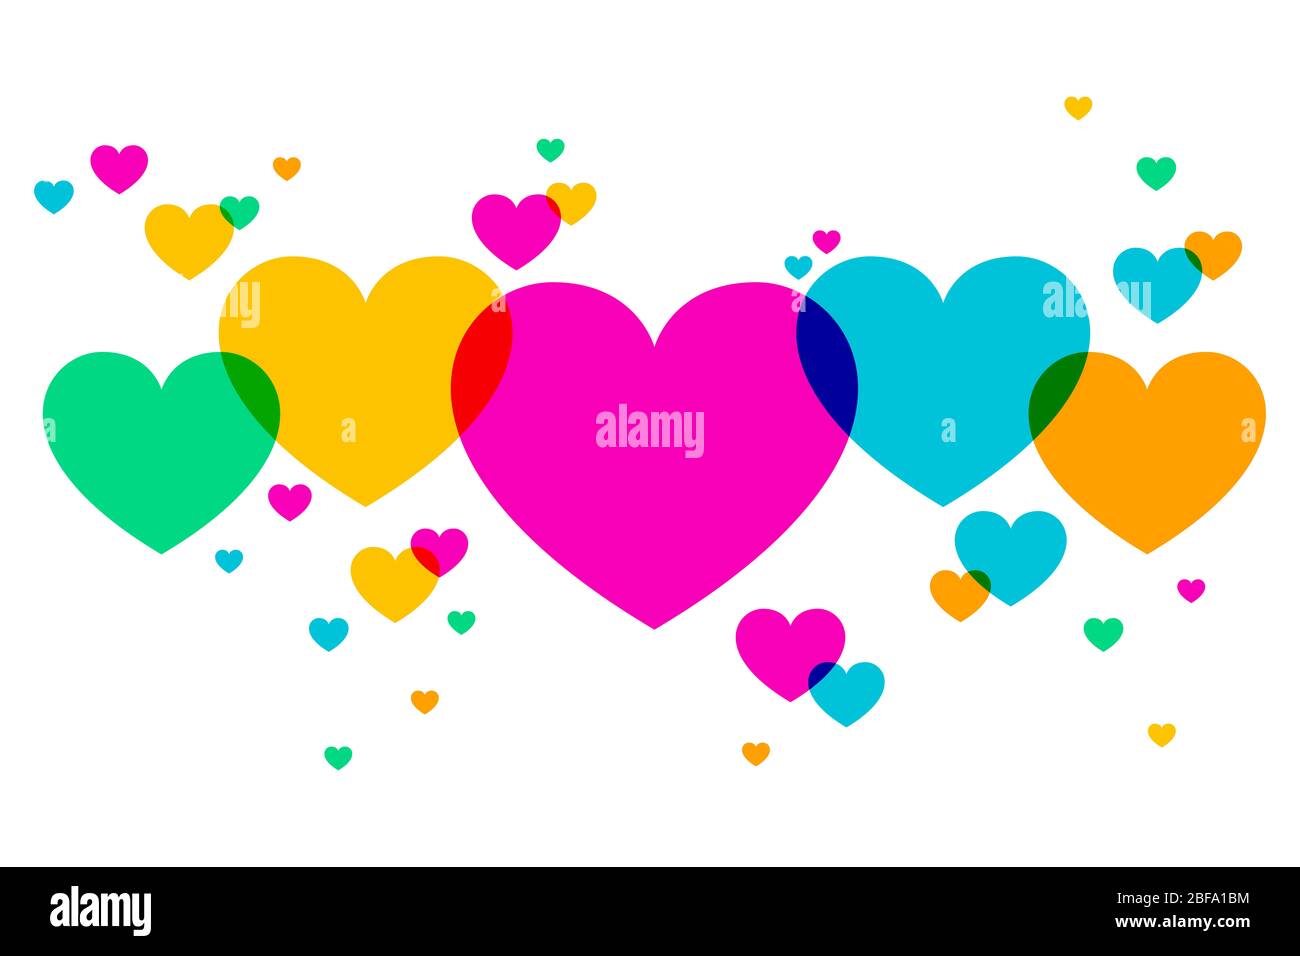 Hintergrund aus überlappenden bunten Herzformen. Zufällig platzierte Herzsymbole zum Ausdruck bringen Emotionen wie romantische Liebe oder Freude. Abbildung Stockfoto